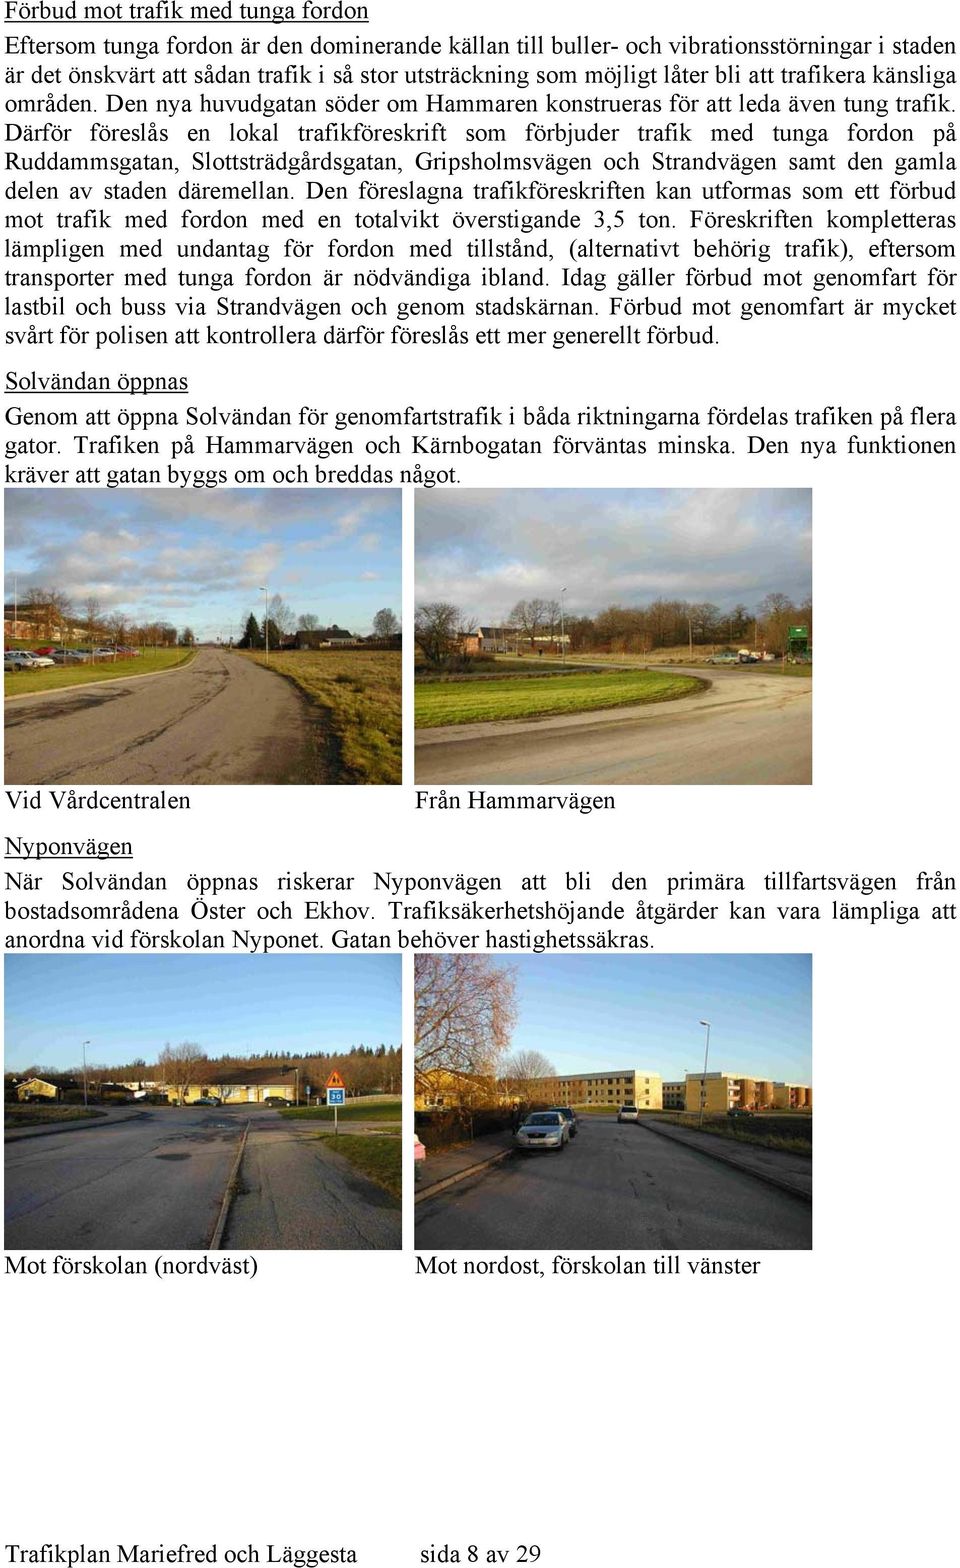 Därför föreslås en lokal trafikföreskrift som förbjuder trafik med tunga fordon på Ruddammsgatan, Slottsträdgårdsgatan, Gripsholmsvägen och Strandvägen samt den gamla delen av staden däremellan.